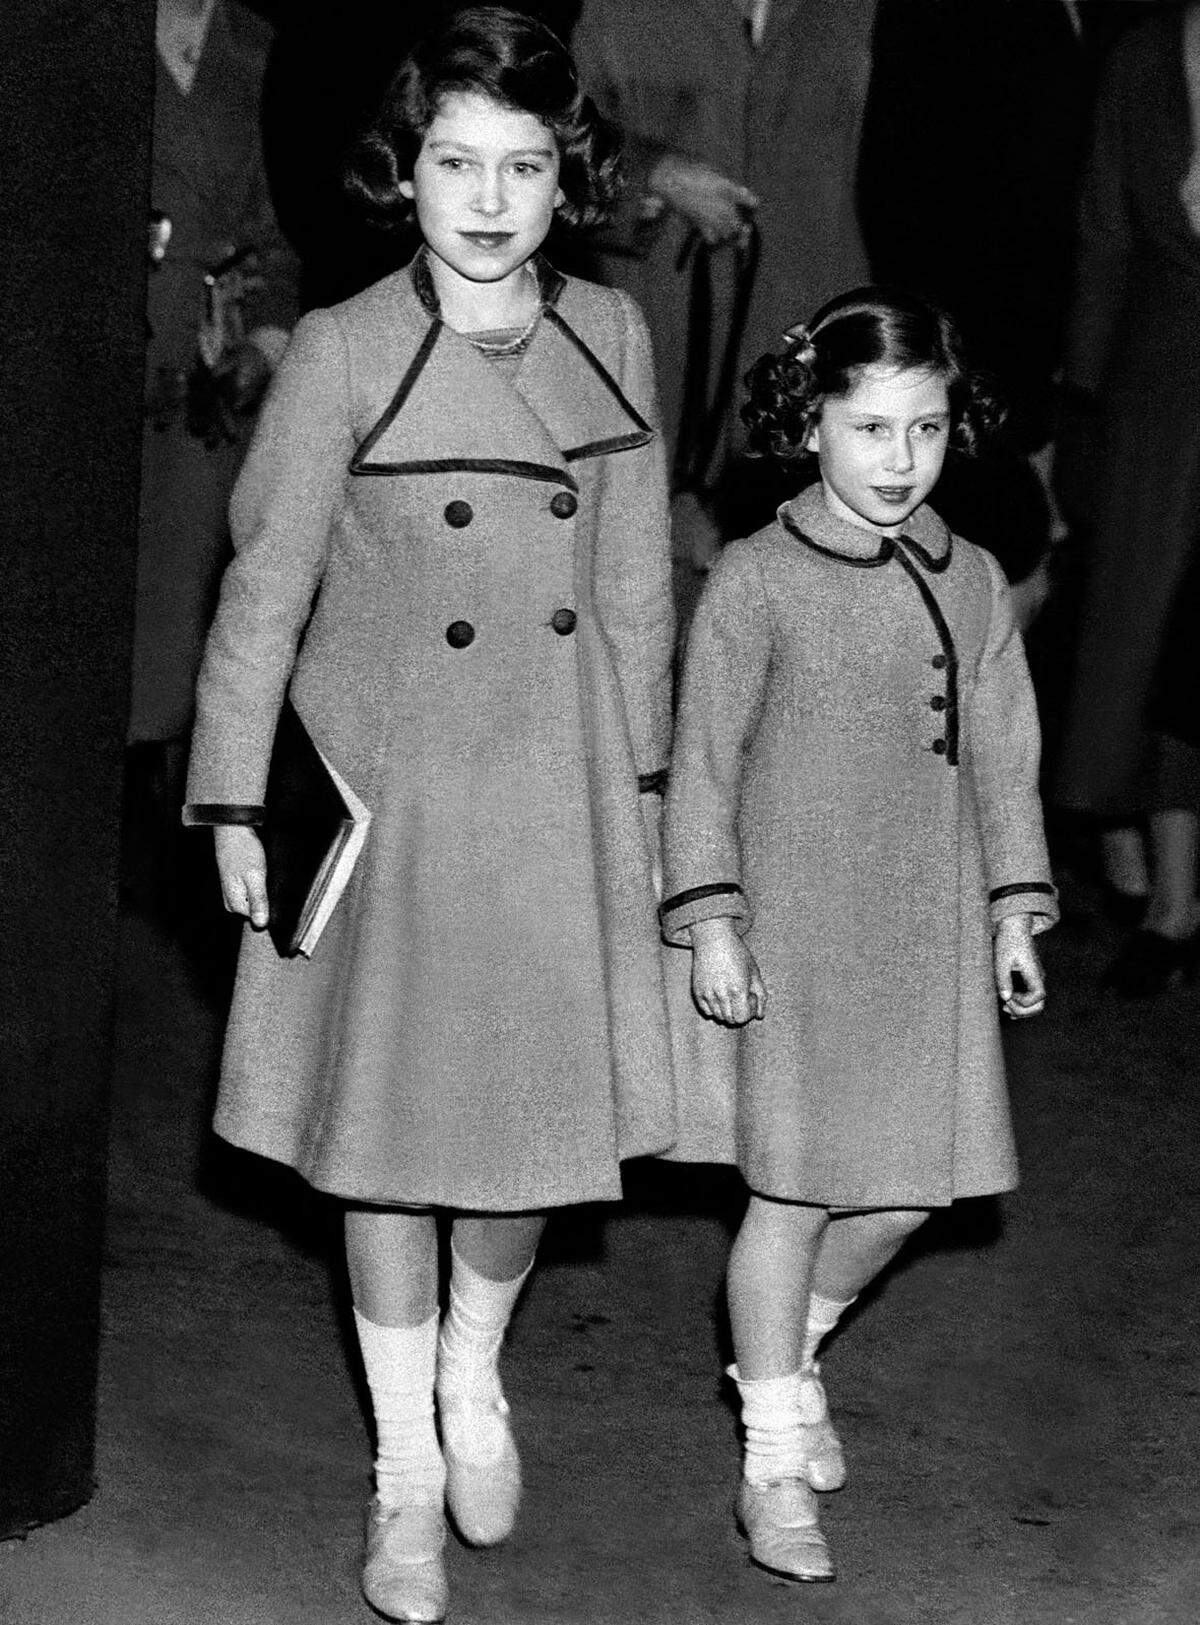 Margaret wurde am 21. August 1930 als zweite Tochter des späteren Königs George VI geboren. Auch wenn die beiden Schwestern ein sehr unterschiedliches Leben vor sich haben sollten, ihre Kindheit verbringen sie fast ununterbrochen zusammen. Schulkameraden haben die beiden nie, sie werden von Gouvernanten aufgezogen und erhalten Privatunterricht.